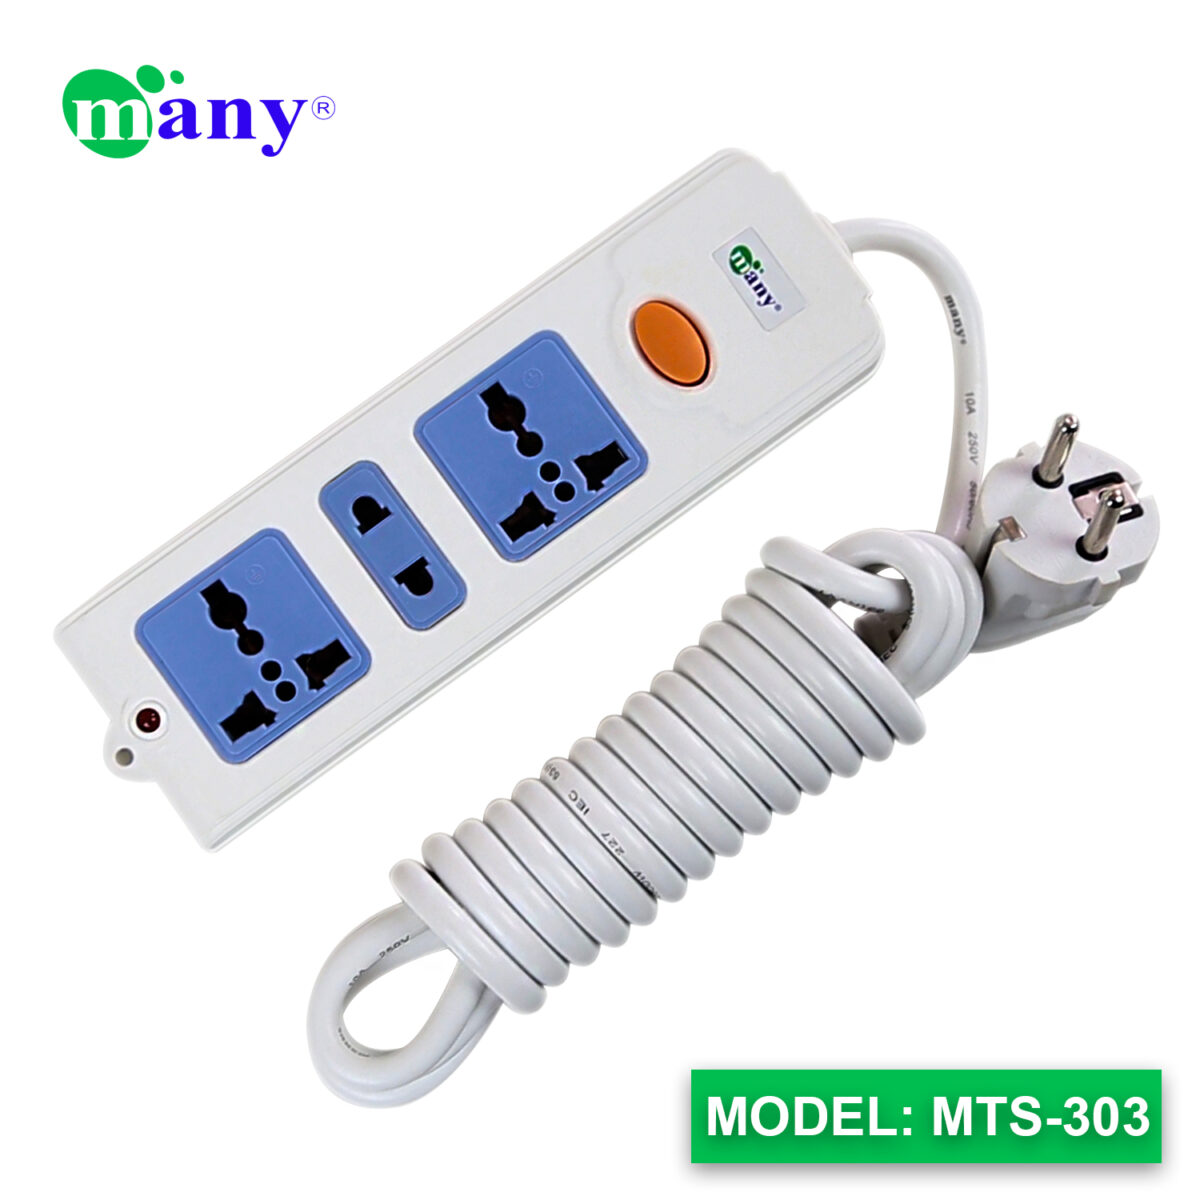 Many multiplug mts-303